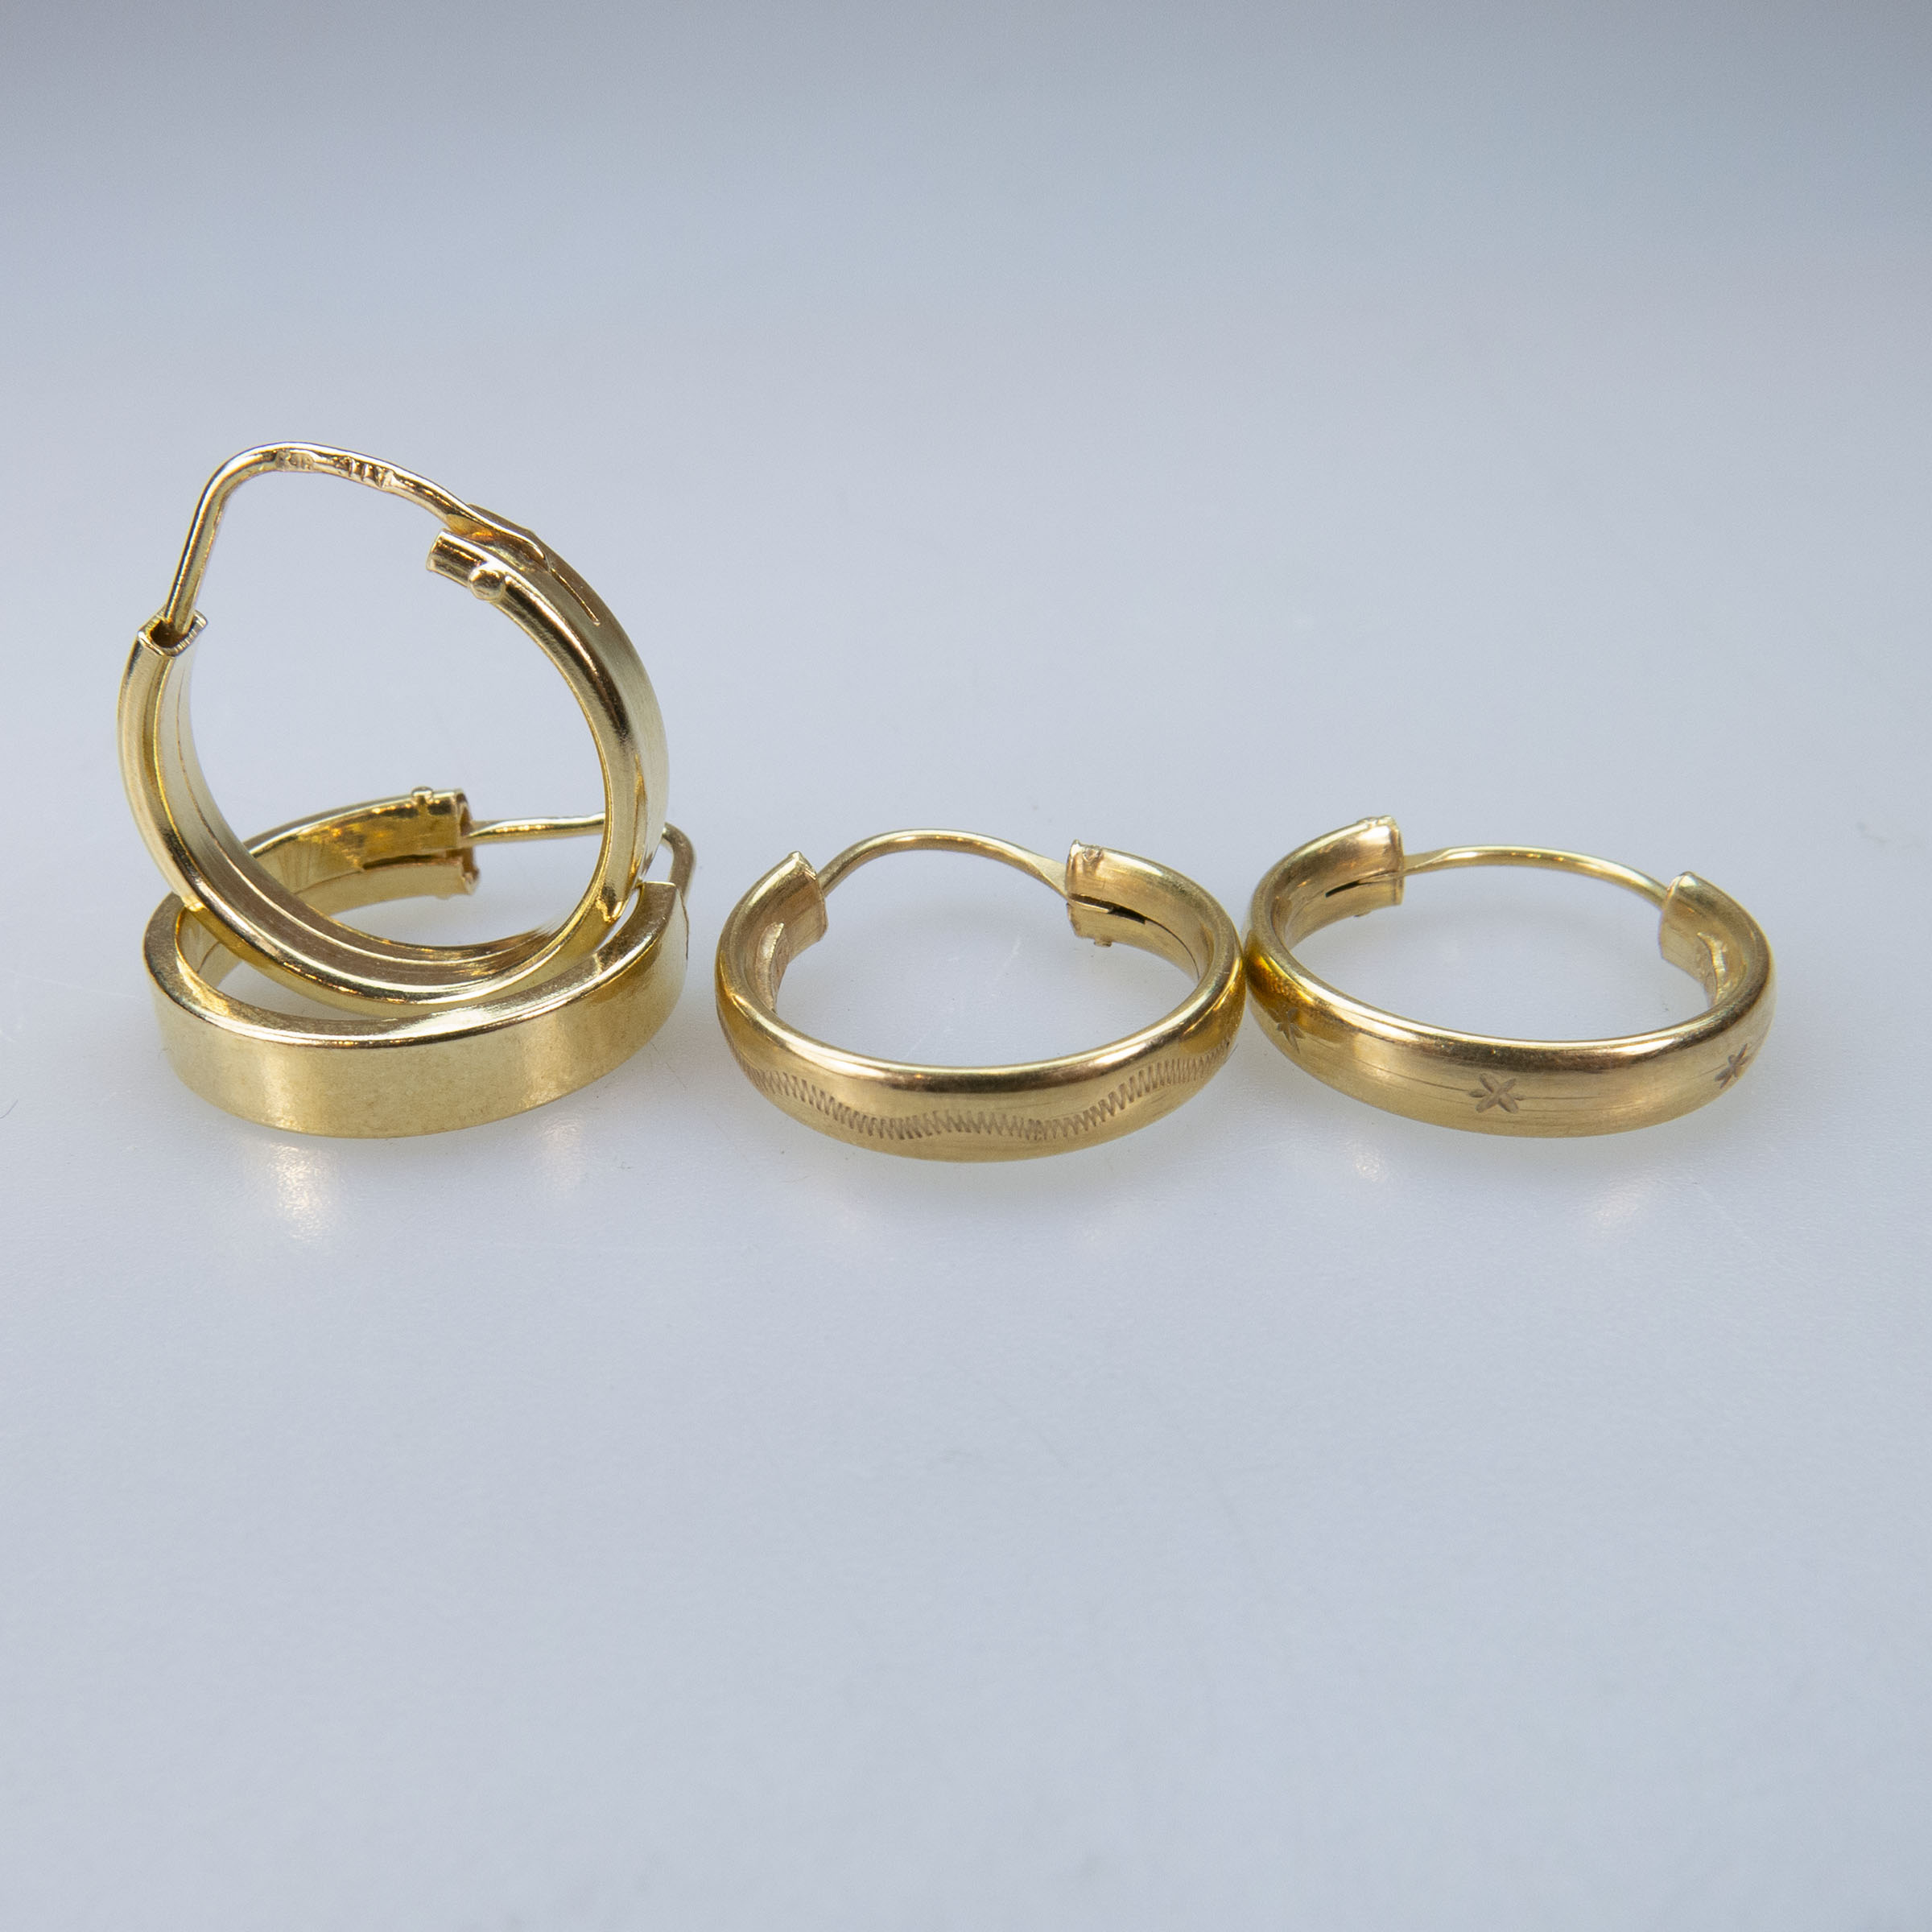 6 x Pairs Of 18k Yellow Gold Hoop Earrings